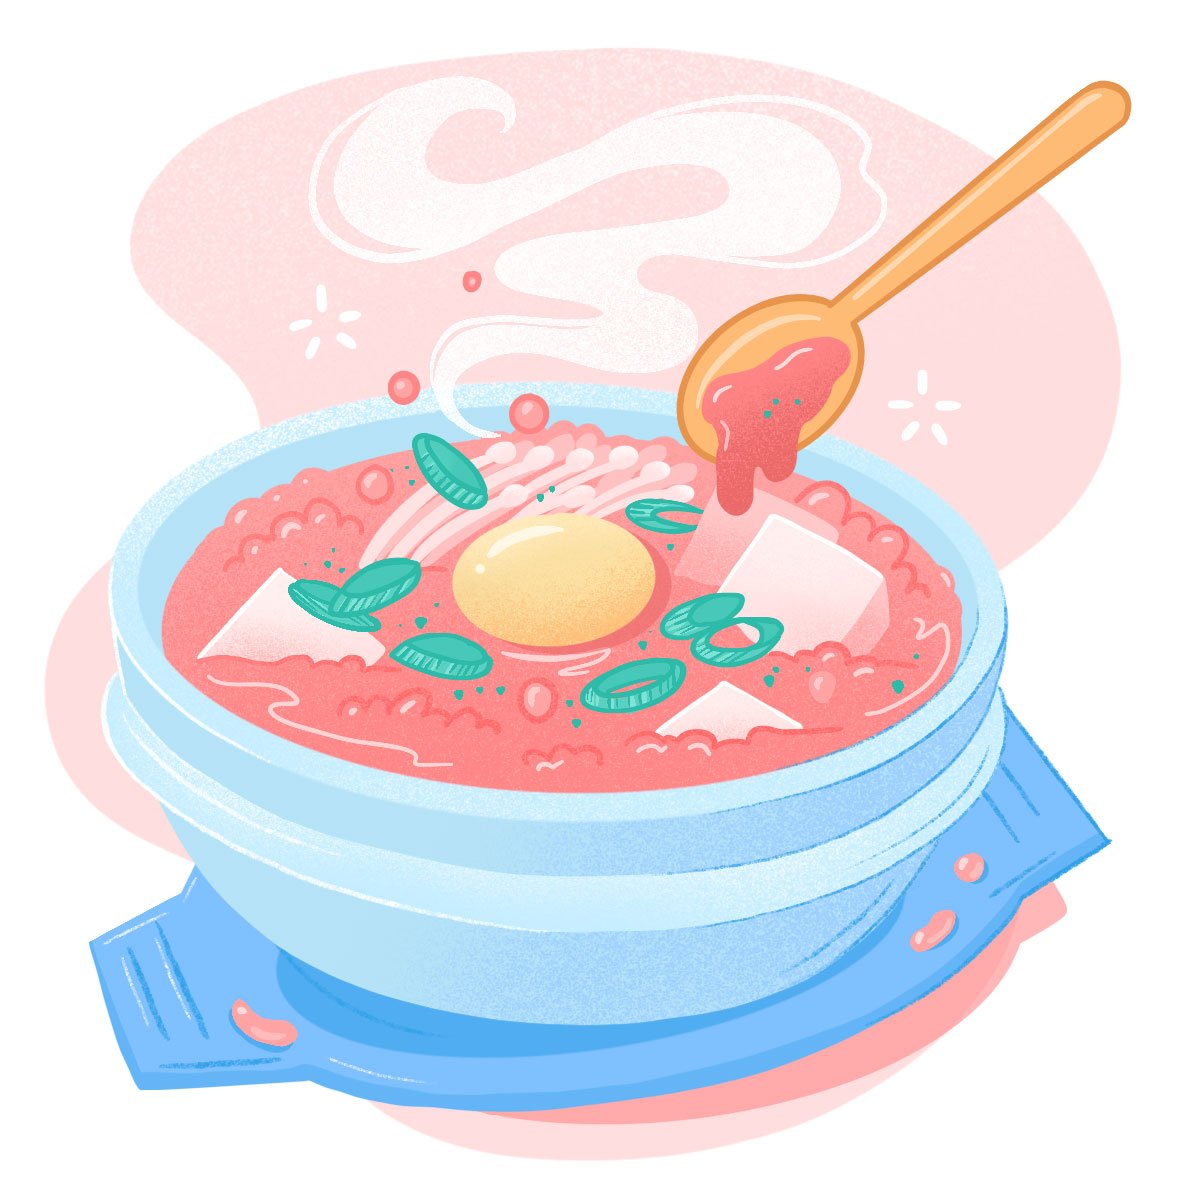 2-Jang-Su-Jang-tofu-stew-food-spot-illustration-atlanta-magazine-belindaskou.jpg